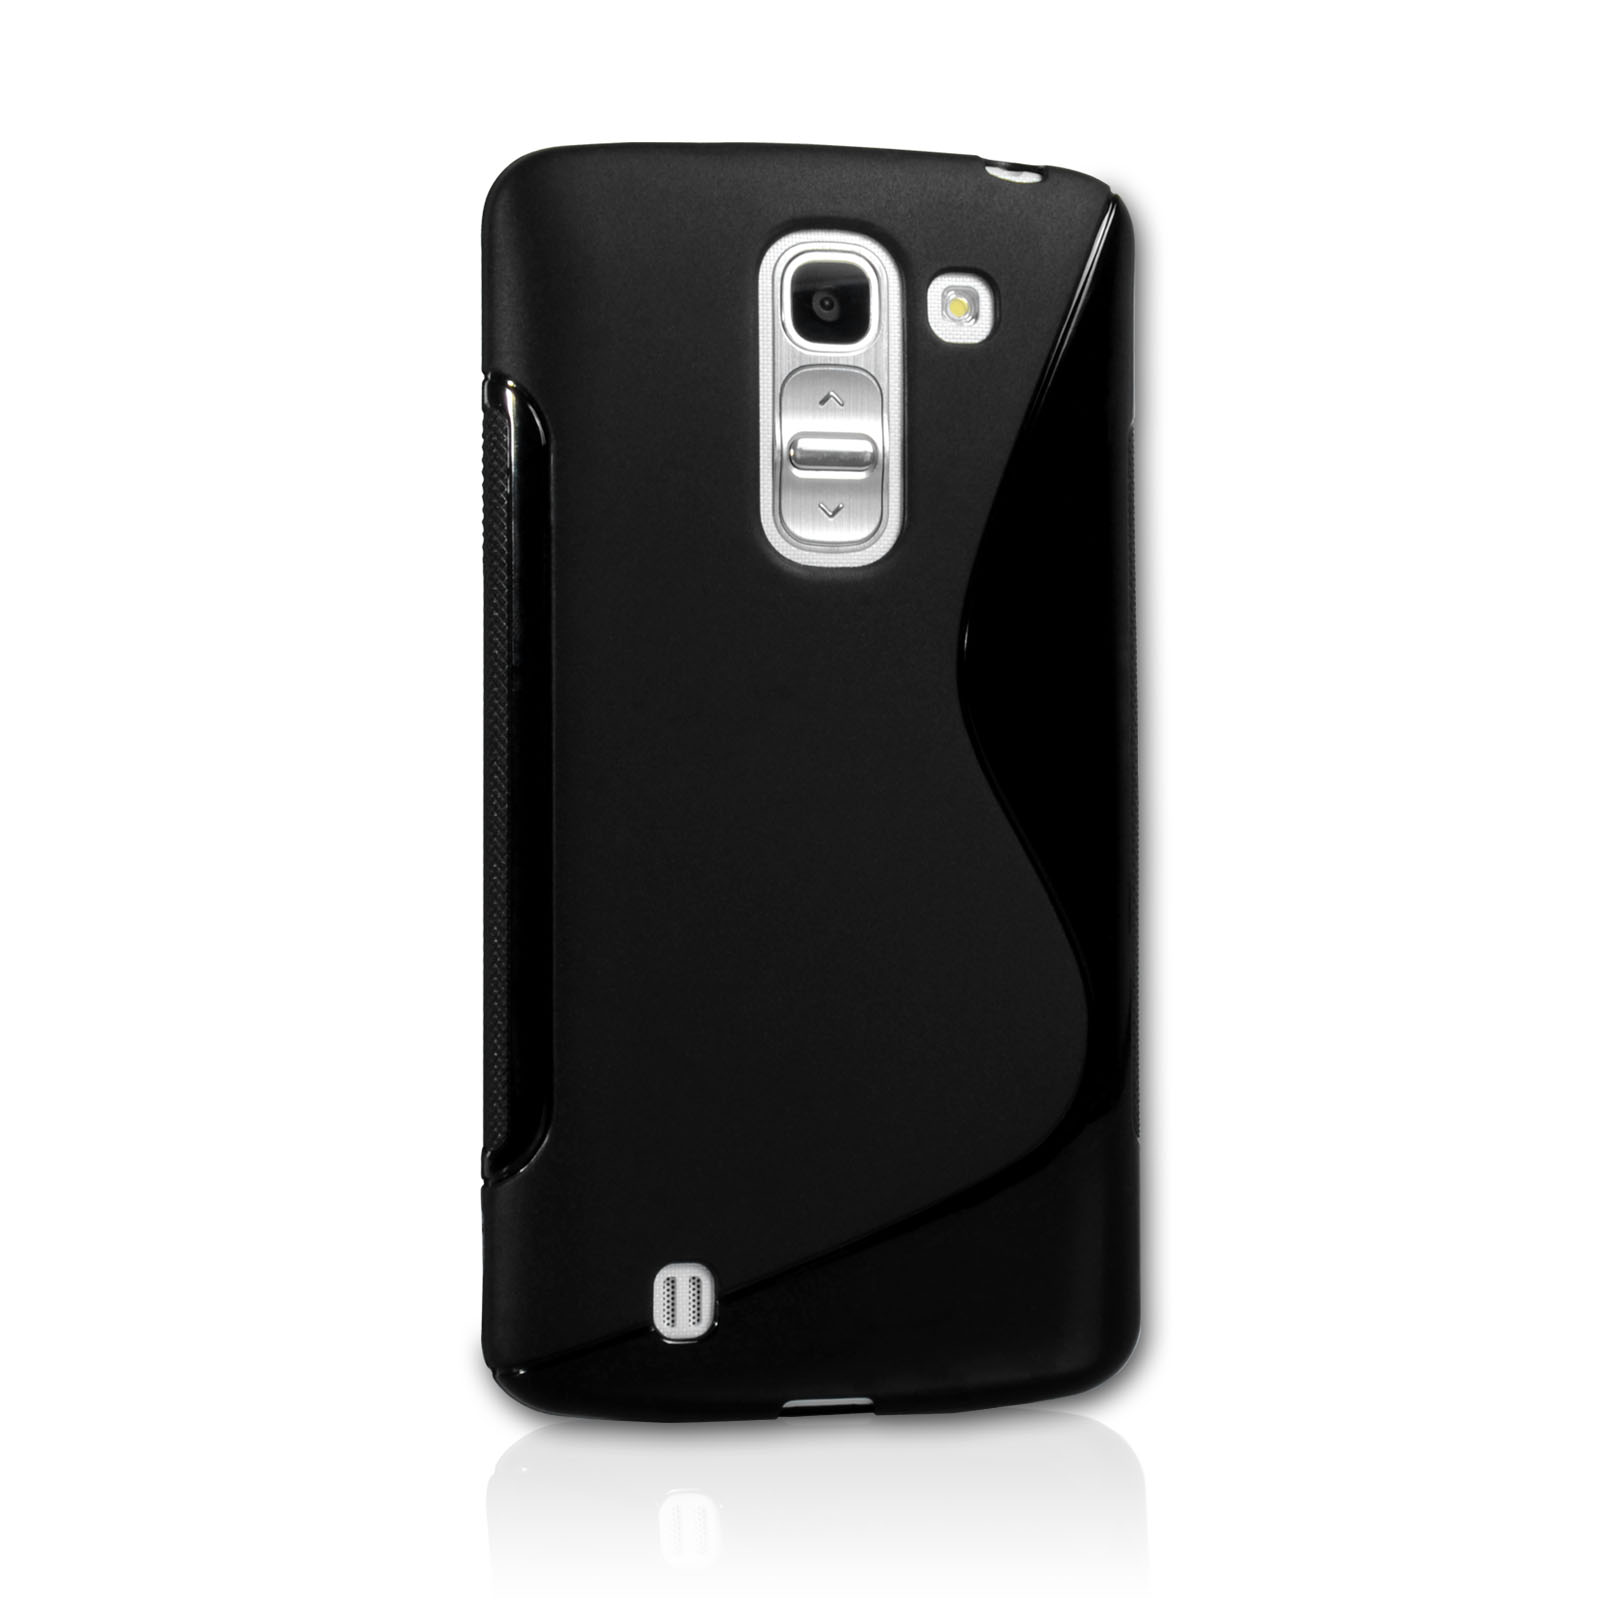 Caseflex LG G Pro 2 Silicone Gel S-Line Case - Black